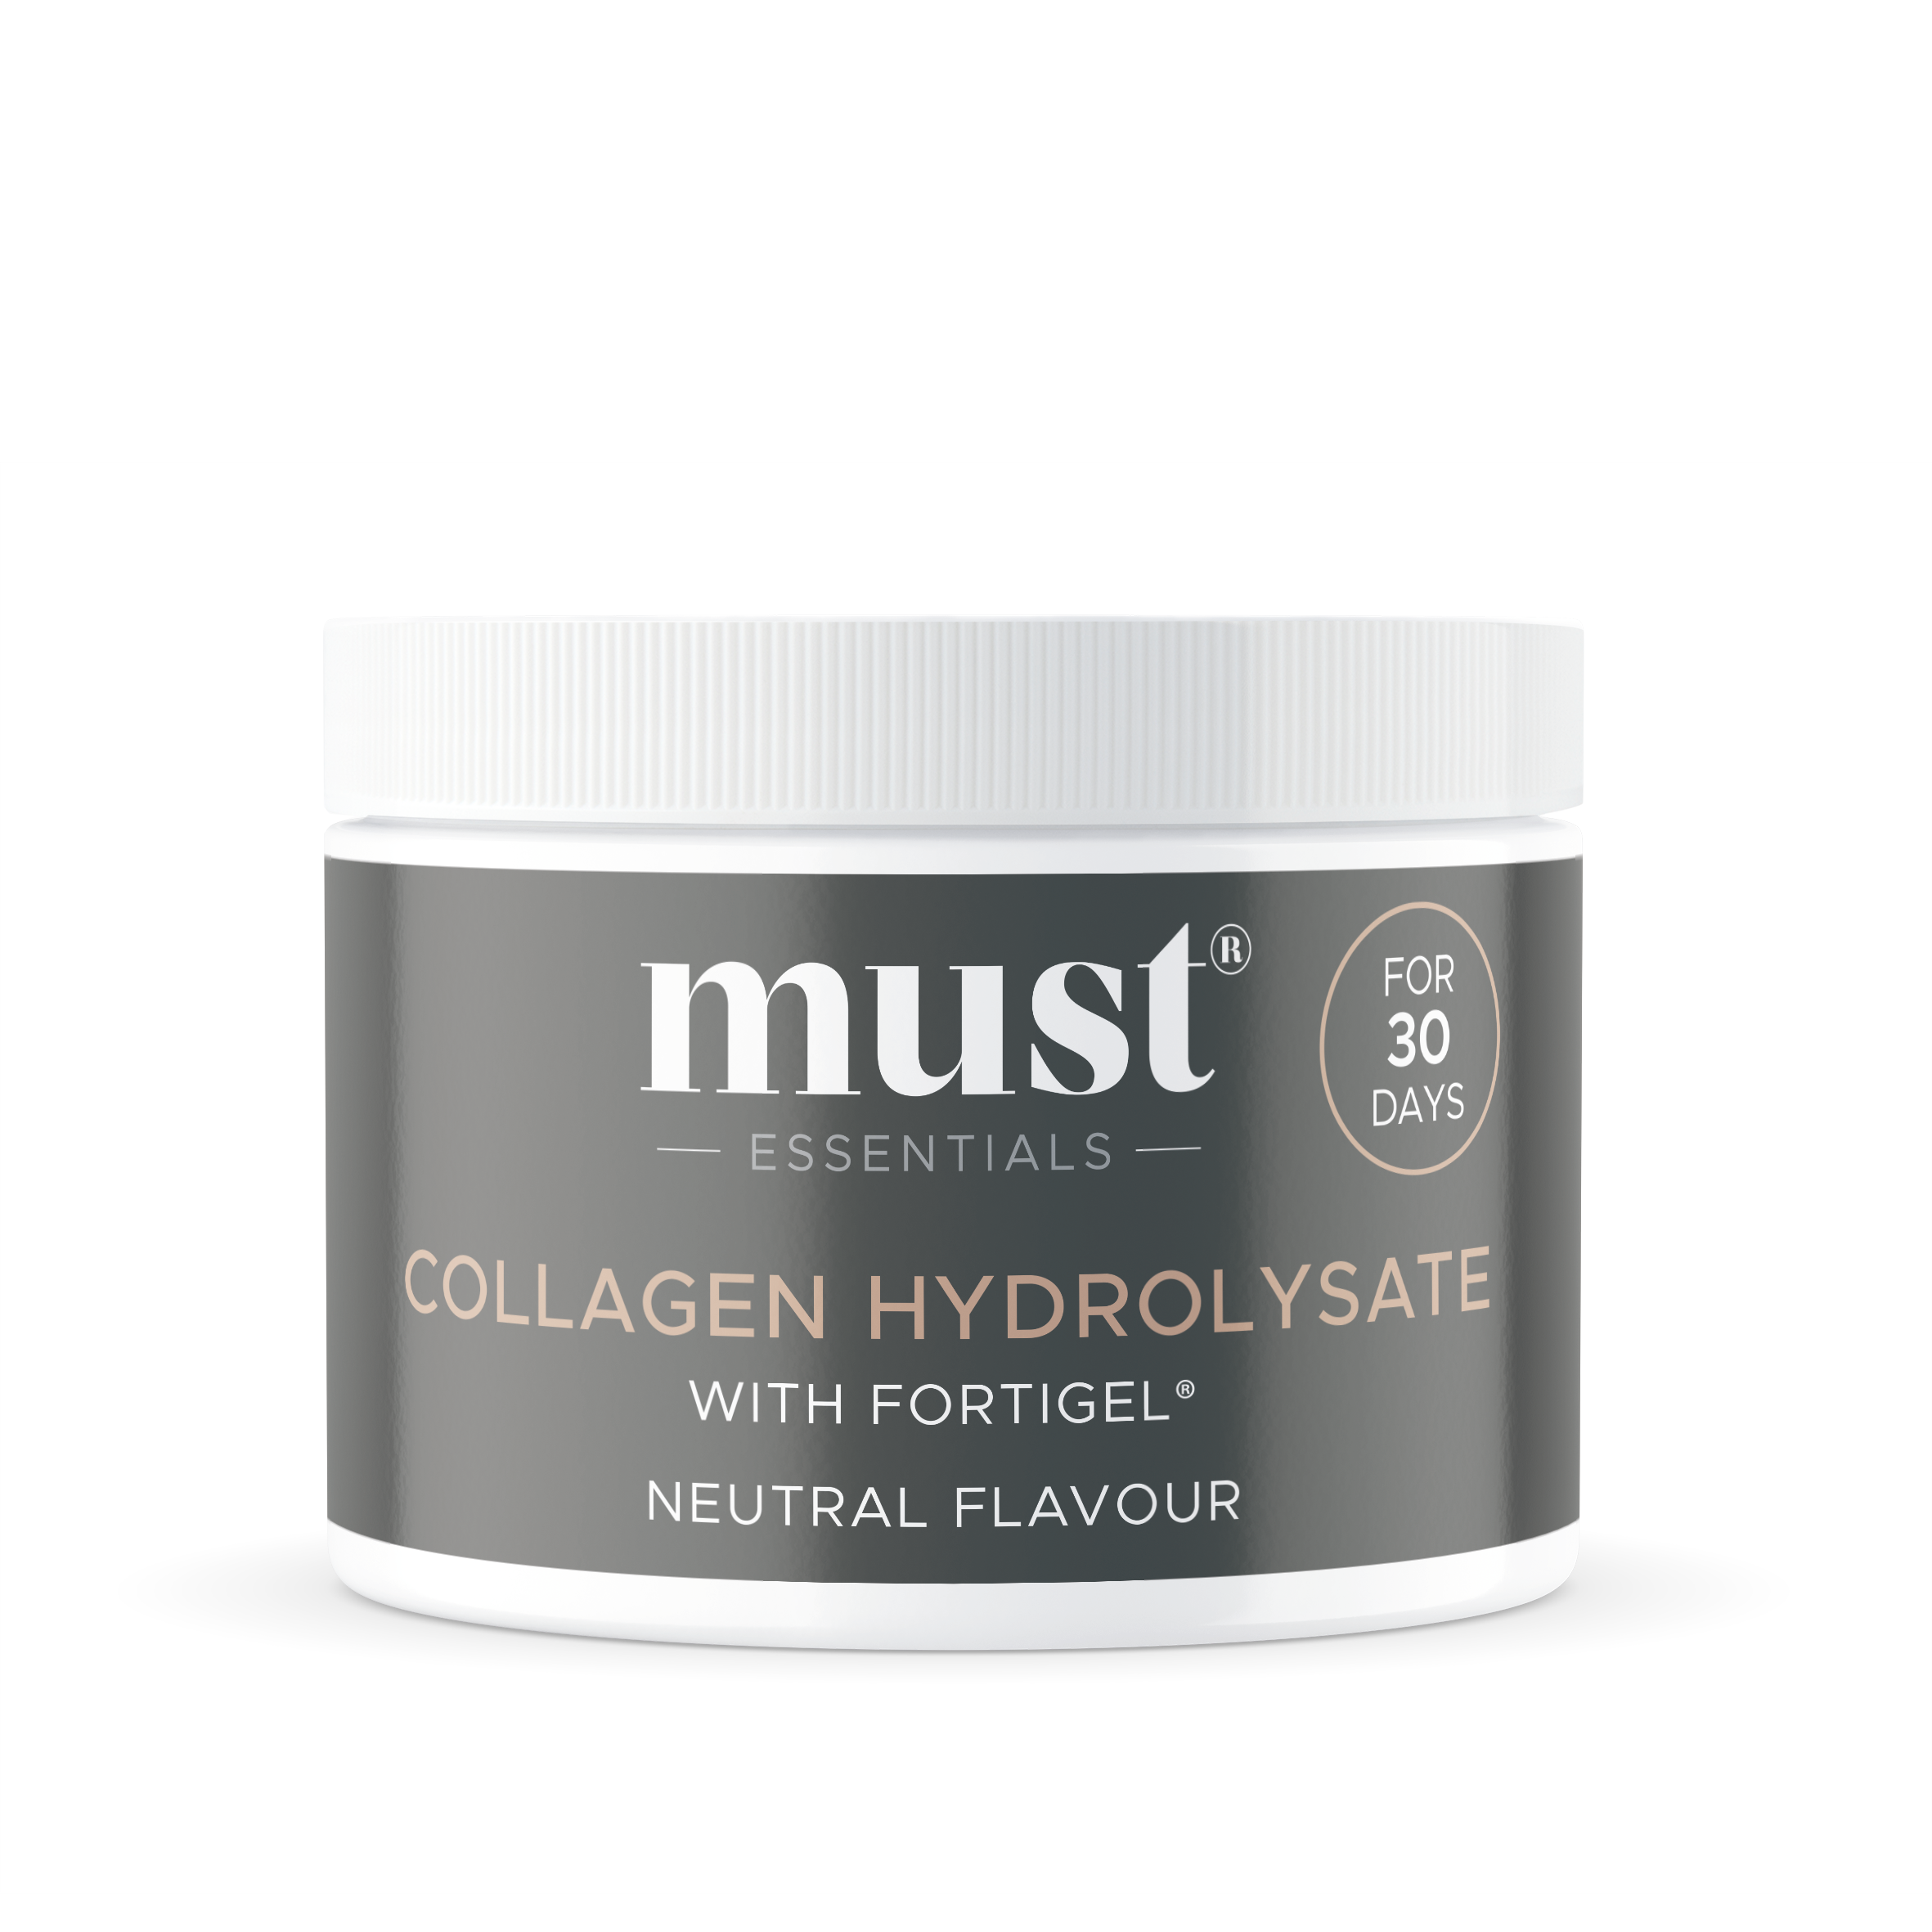 Brug MUST Essentials Collagen Hydrolysate (150g) til en forbedret oplevelse